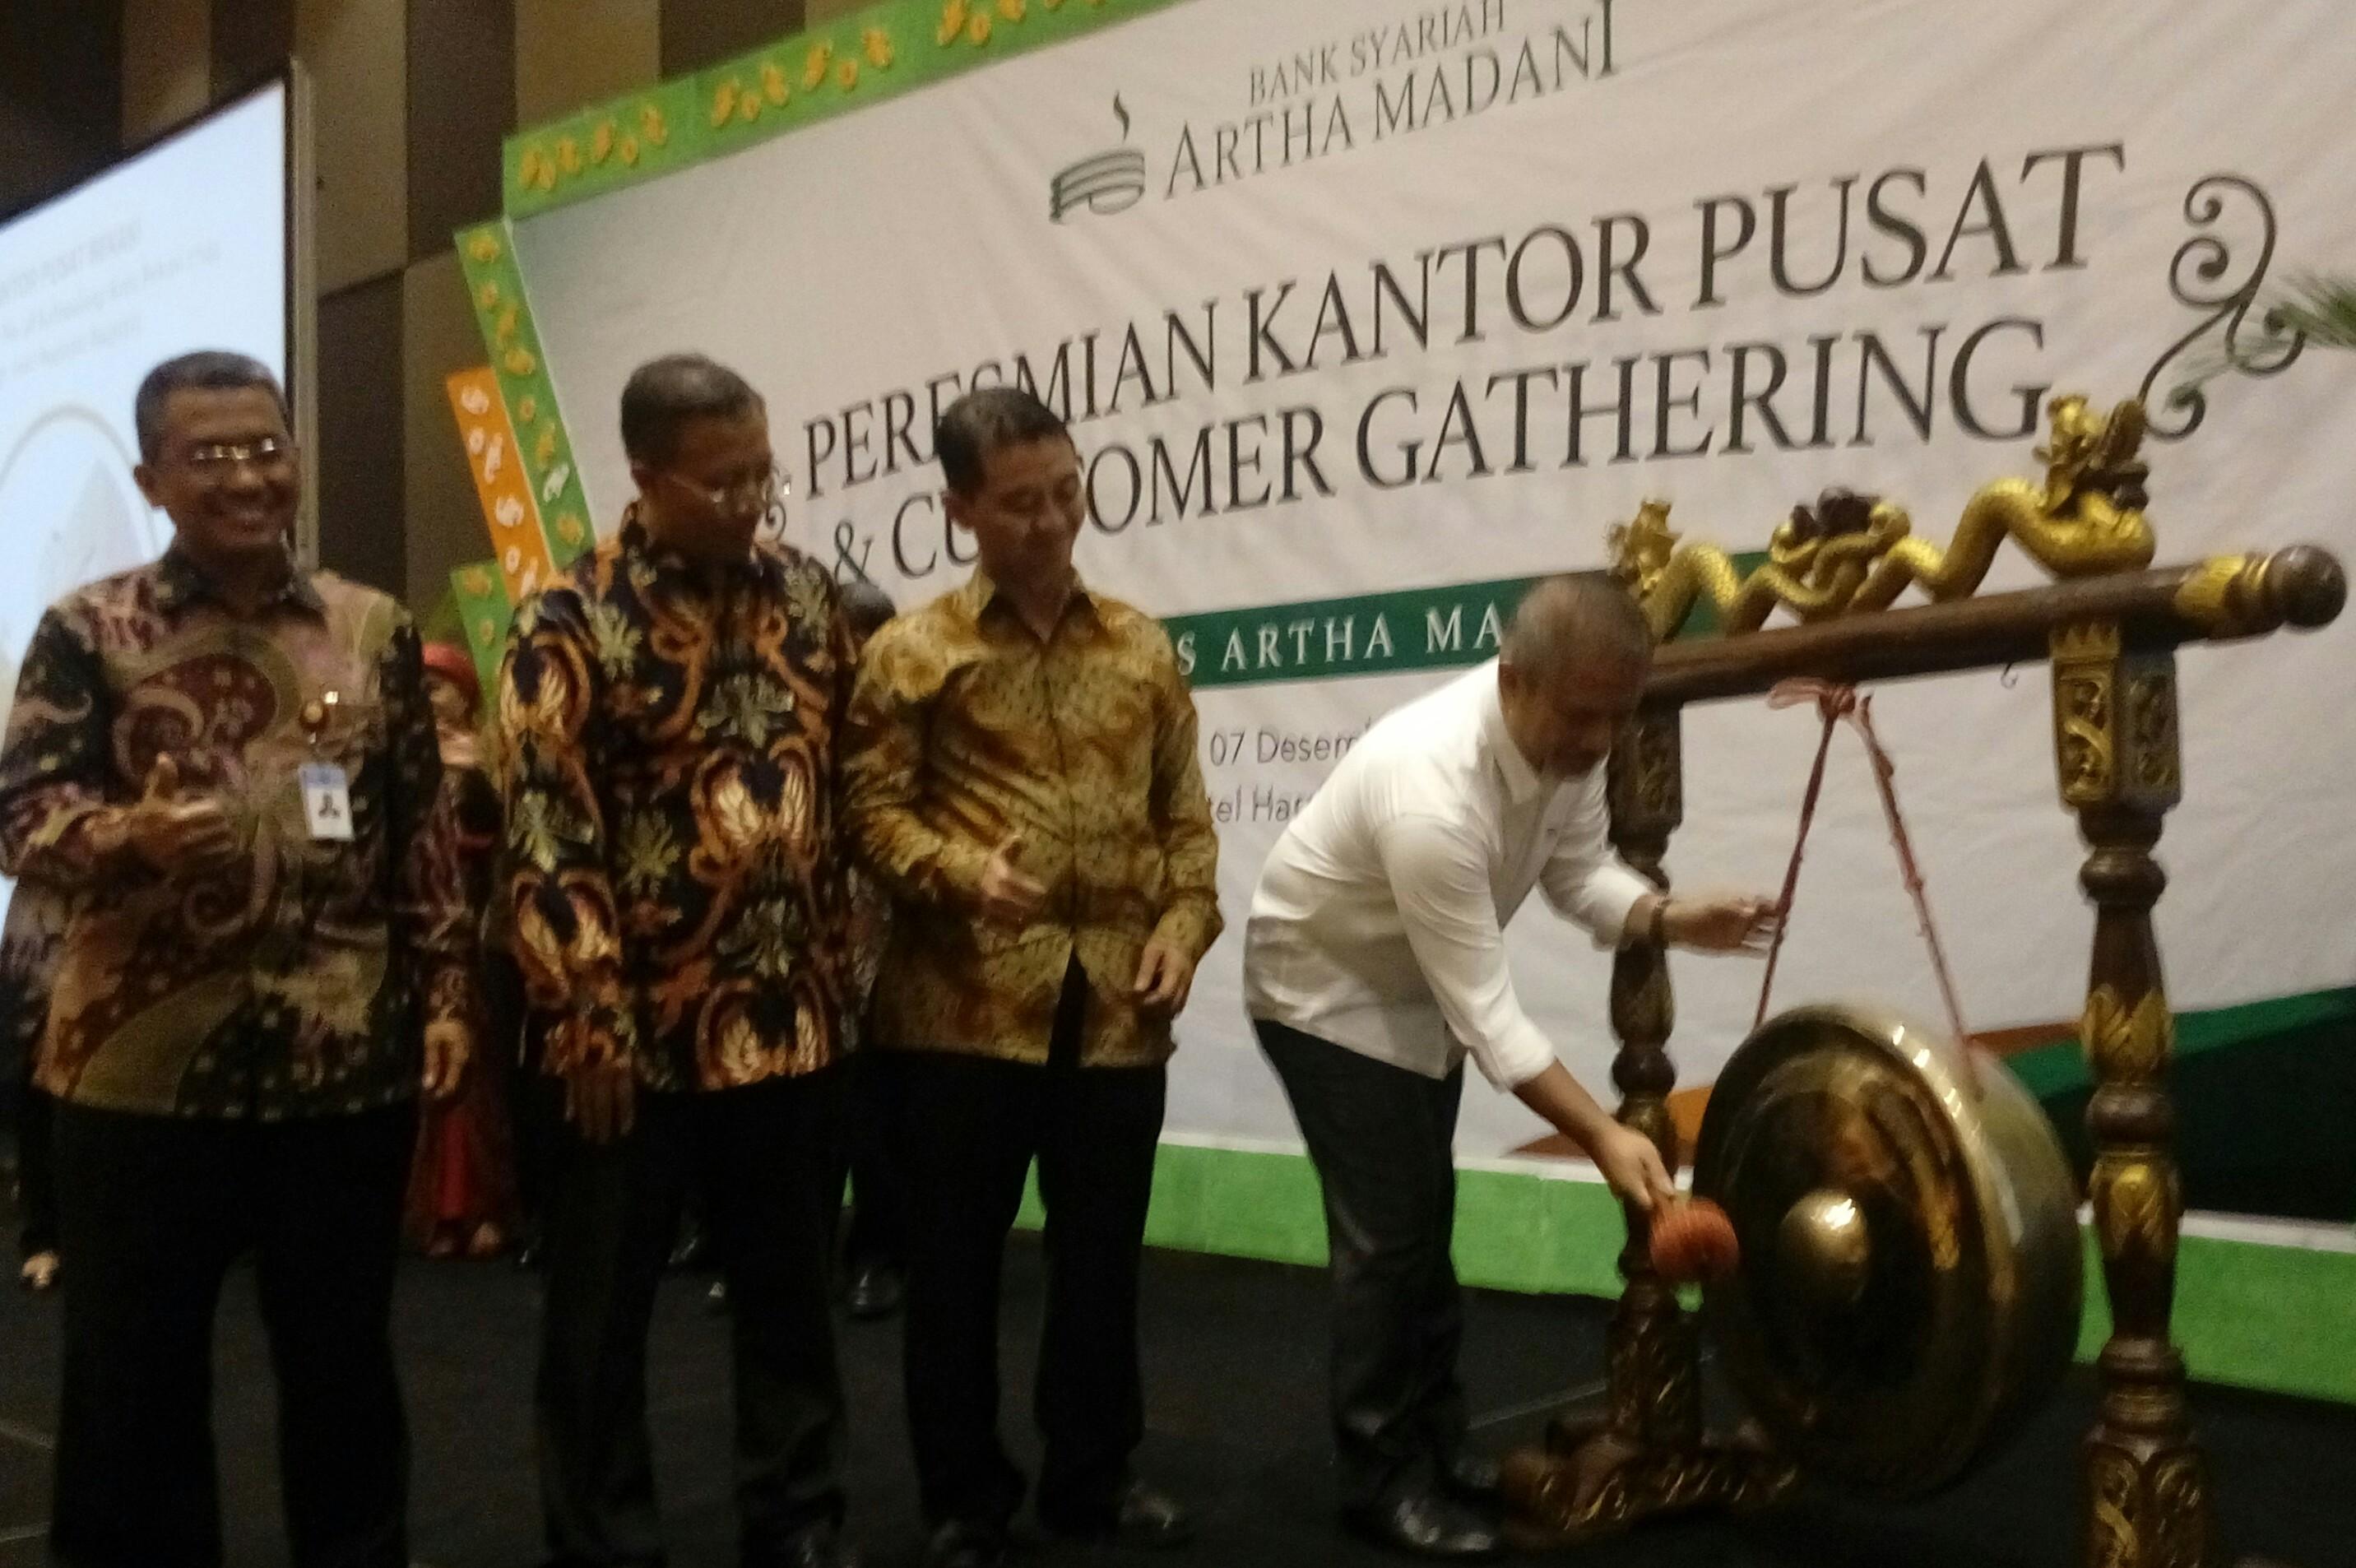 Bank Syariah Artha Madani Resmikan Kantor Pusat di Kota Bekasi